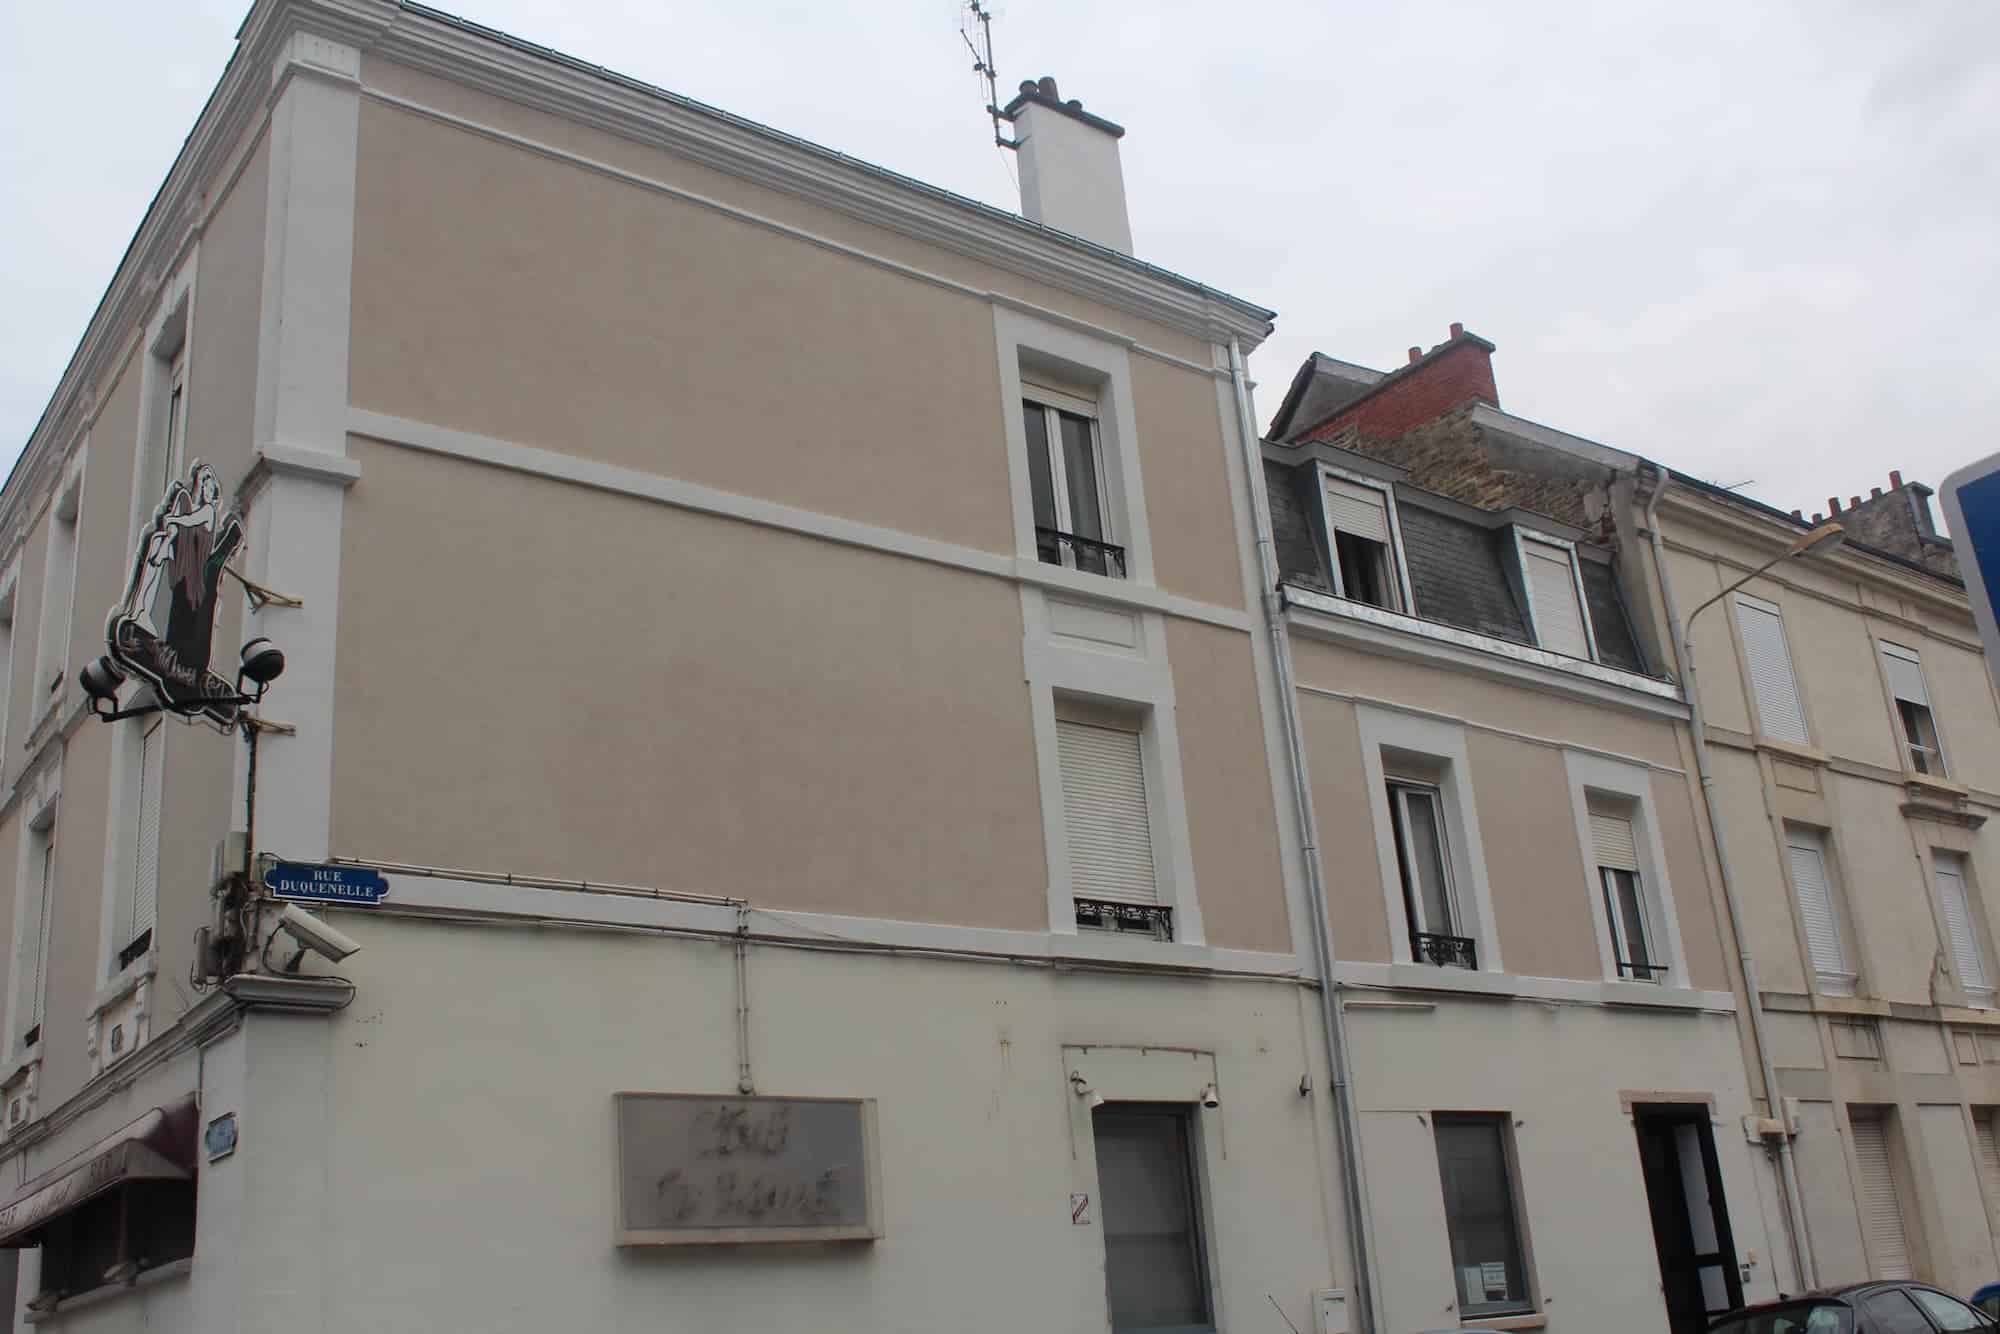 Réfection des corniches et des façades d'une bâtisse à Reims